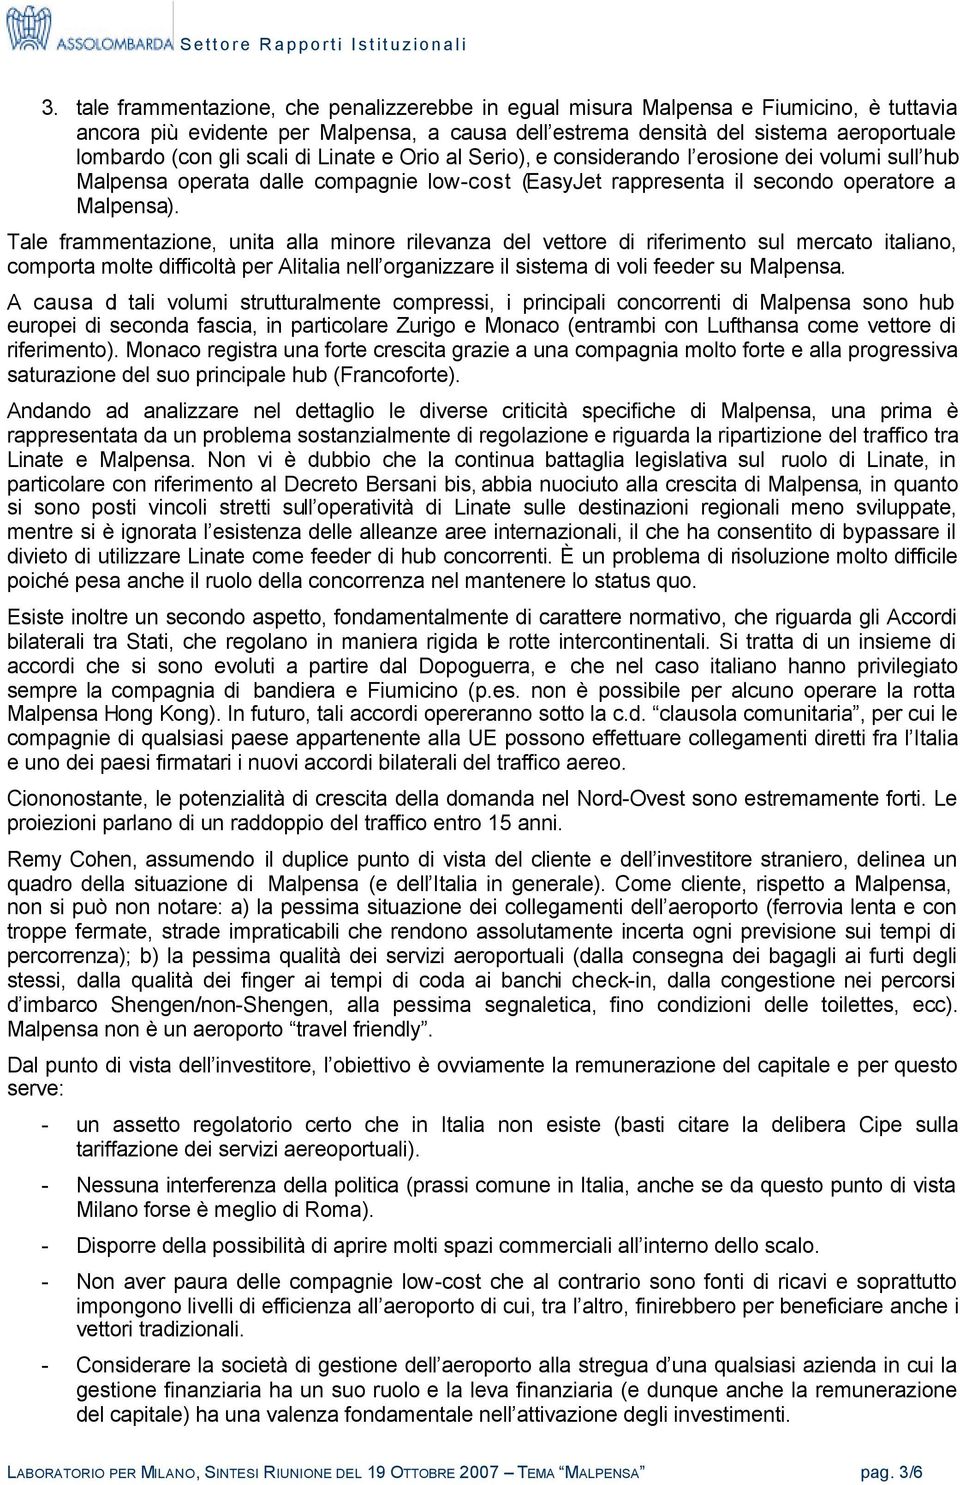 Tale frammentazione, unita alla minore rilevanza del vettore di riferimento sul mercato italiano, comporta molte difficoltà per Alitalia nell organizzare il sistema di voli feeder su Malpensa.